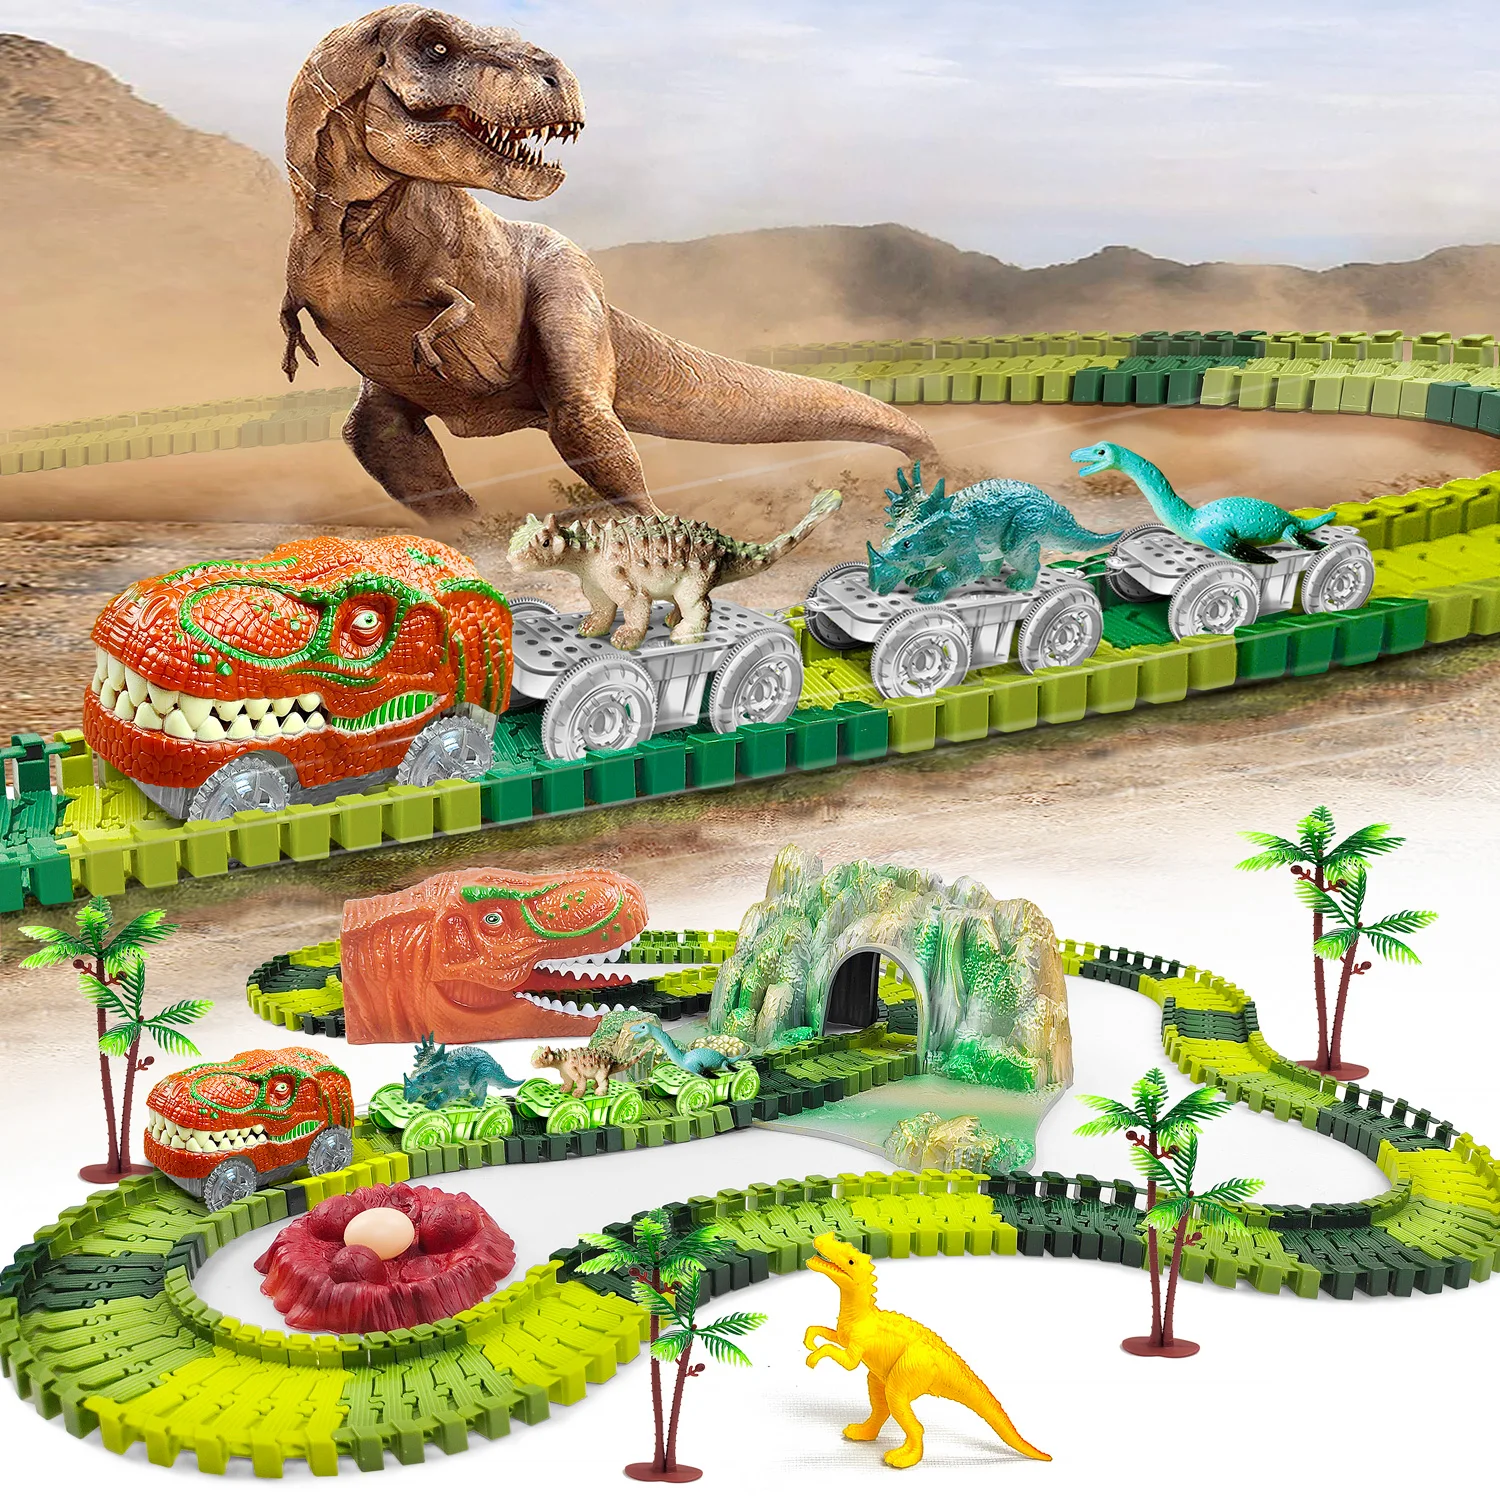 Dinosaur Train Toys Create A Dinosaur World Road Race-Flexible Track Playset ,Dinosaurs Toys Race Car for Old boy Girls